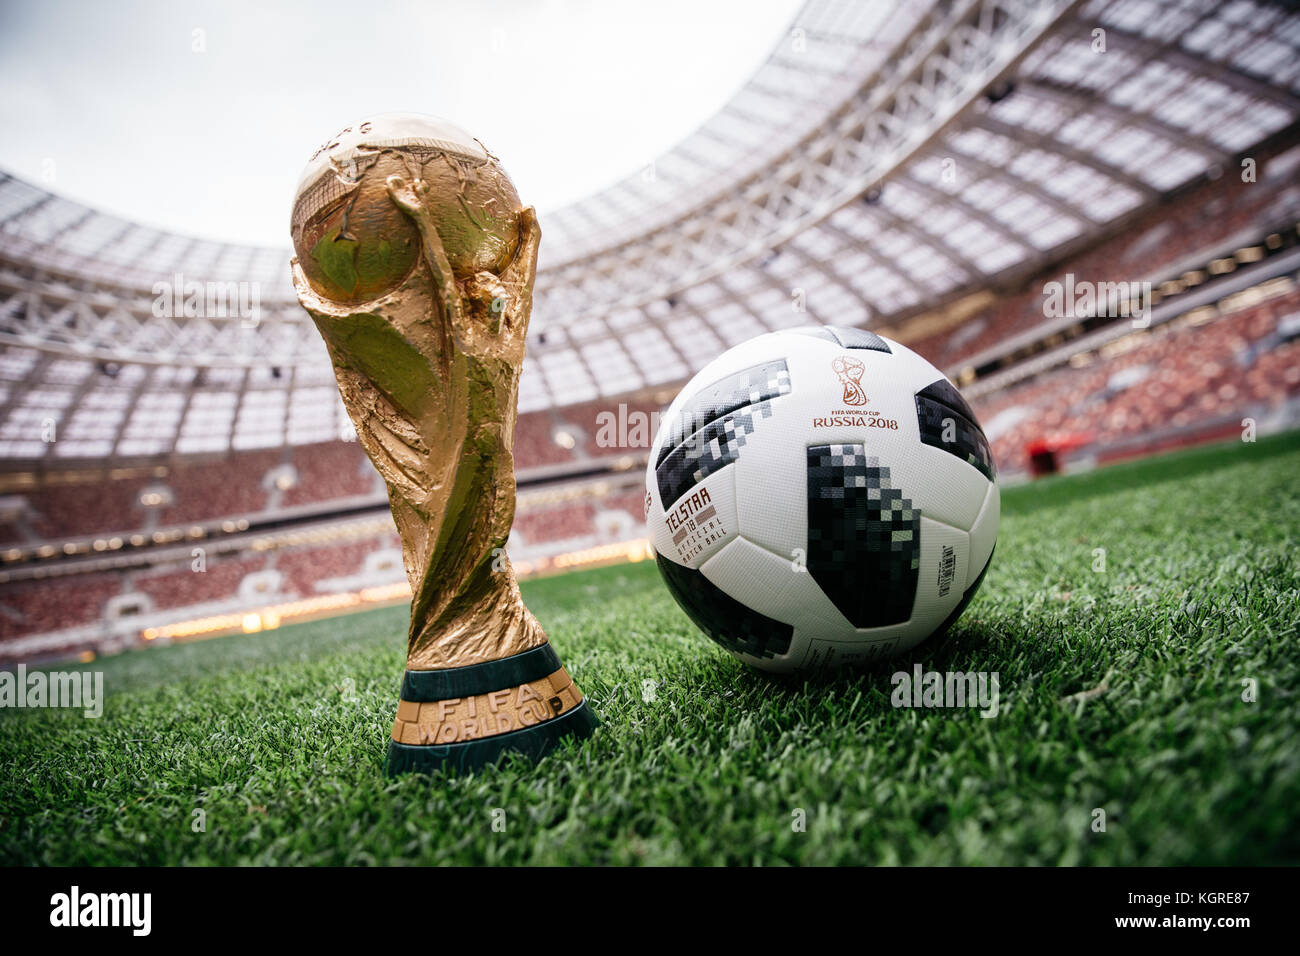 Trophée de la Coupe du monde et deux match ball Telstar 18 de la Coupe du Monde de Football FIFA 2018 stade Luzhniki de Moscou, Russie Banque D'Images